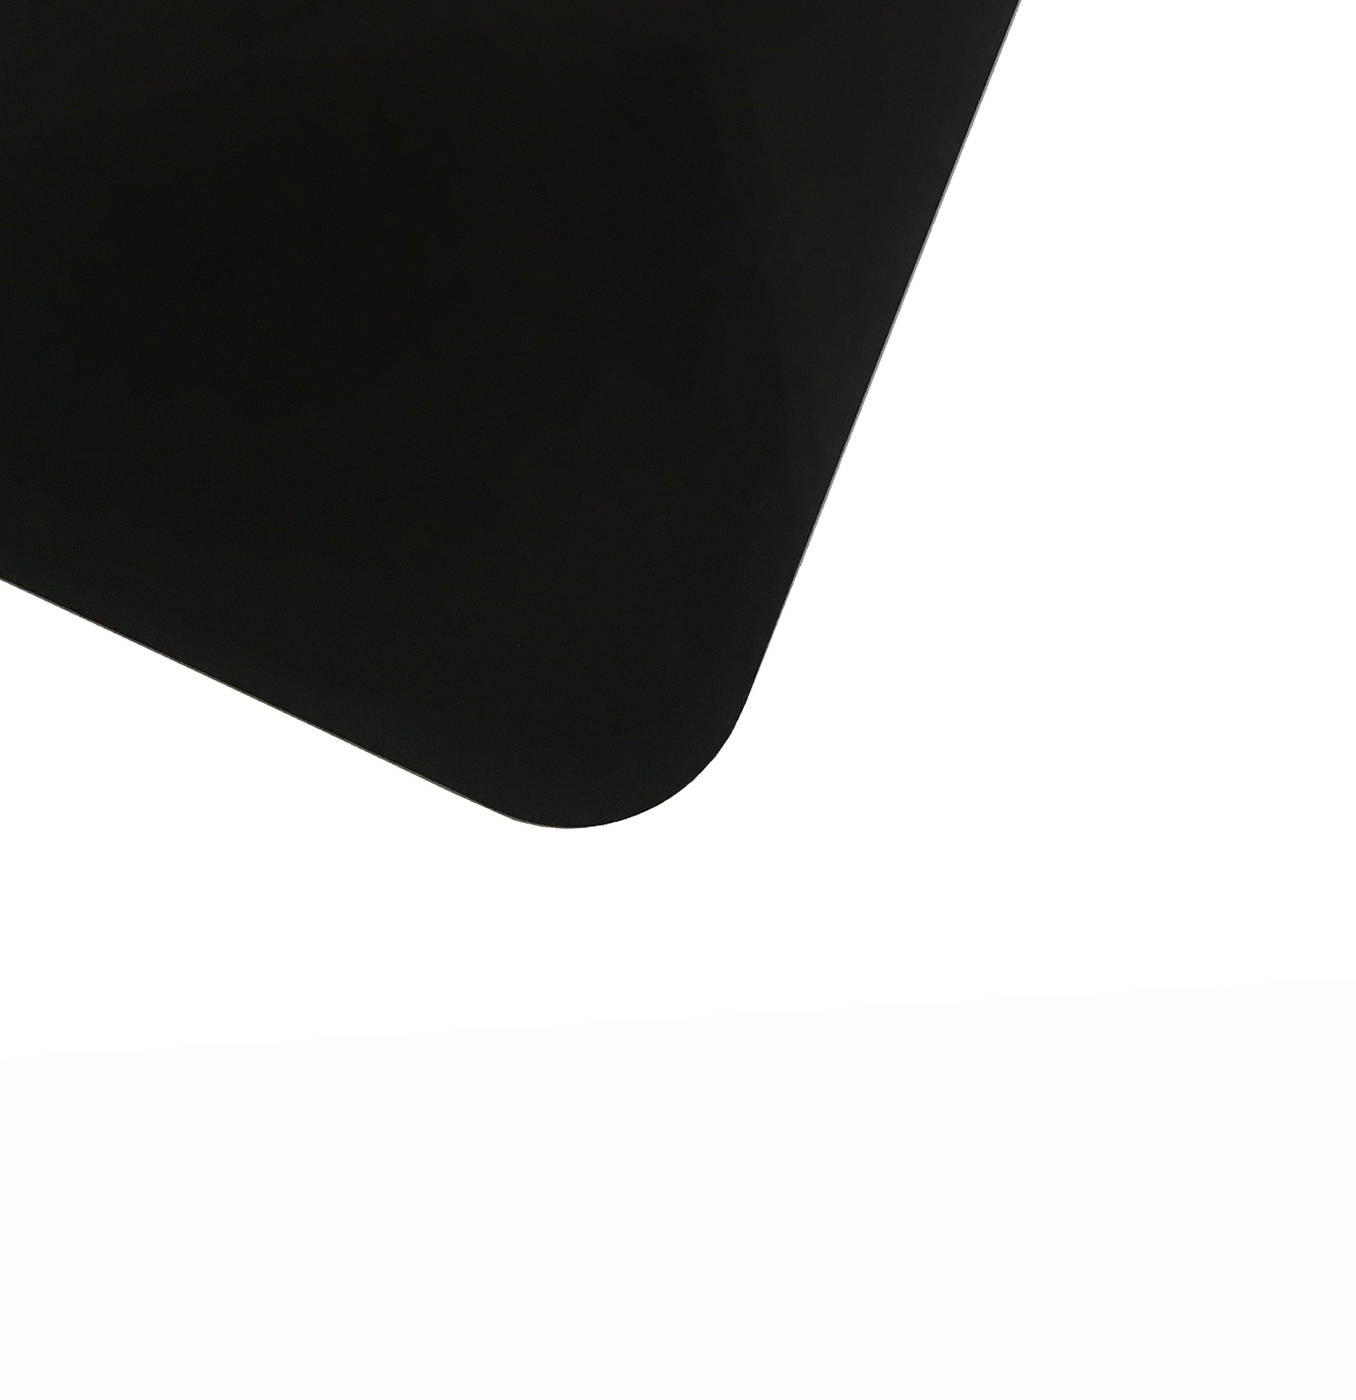 Планшет для пленэра из оргстекла 3 мм, под лист размера 40х60 см, цвет черный Dec-9082049